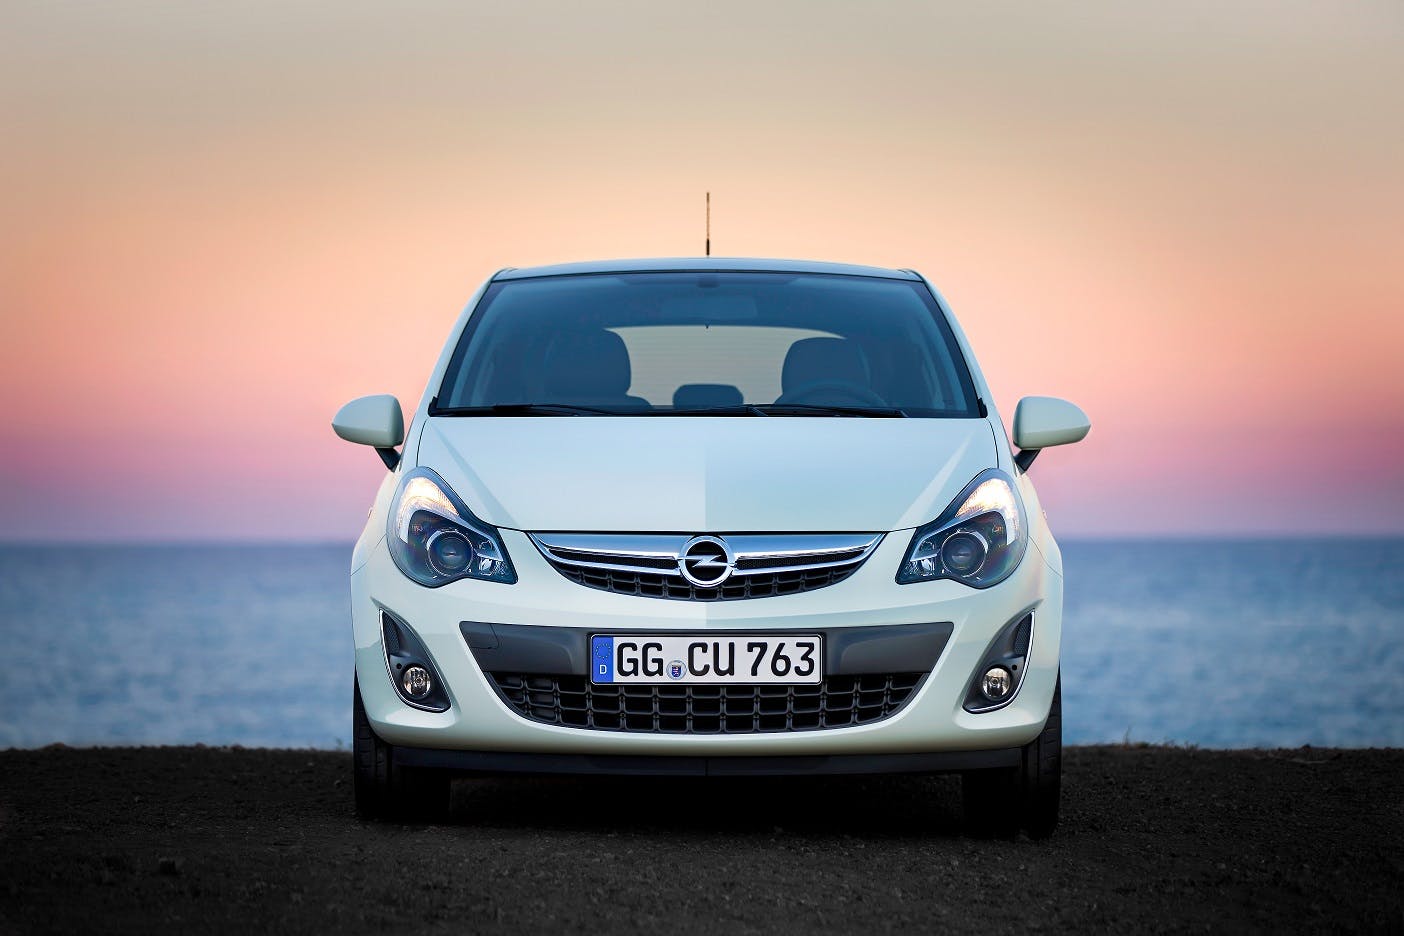 Gebrauchtwagen: Kaufberatung Opel Corsa D (2006-2014)